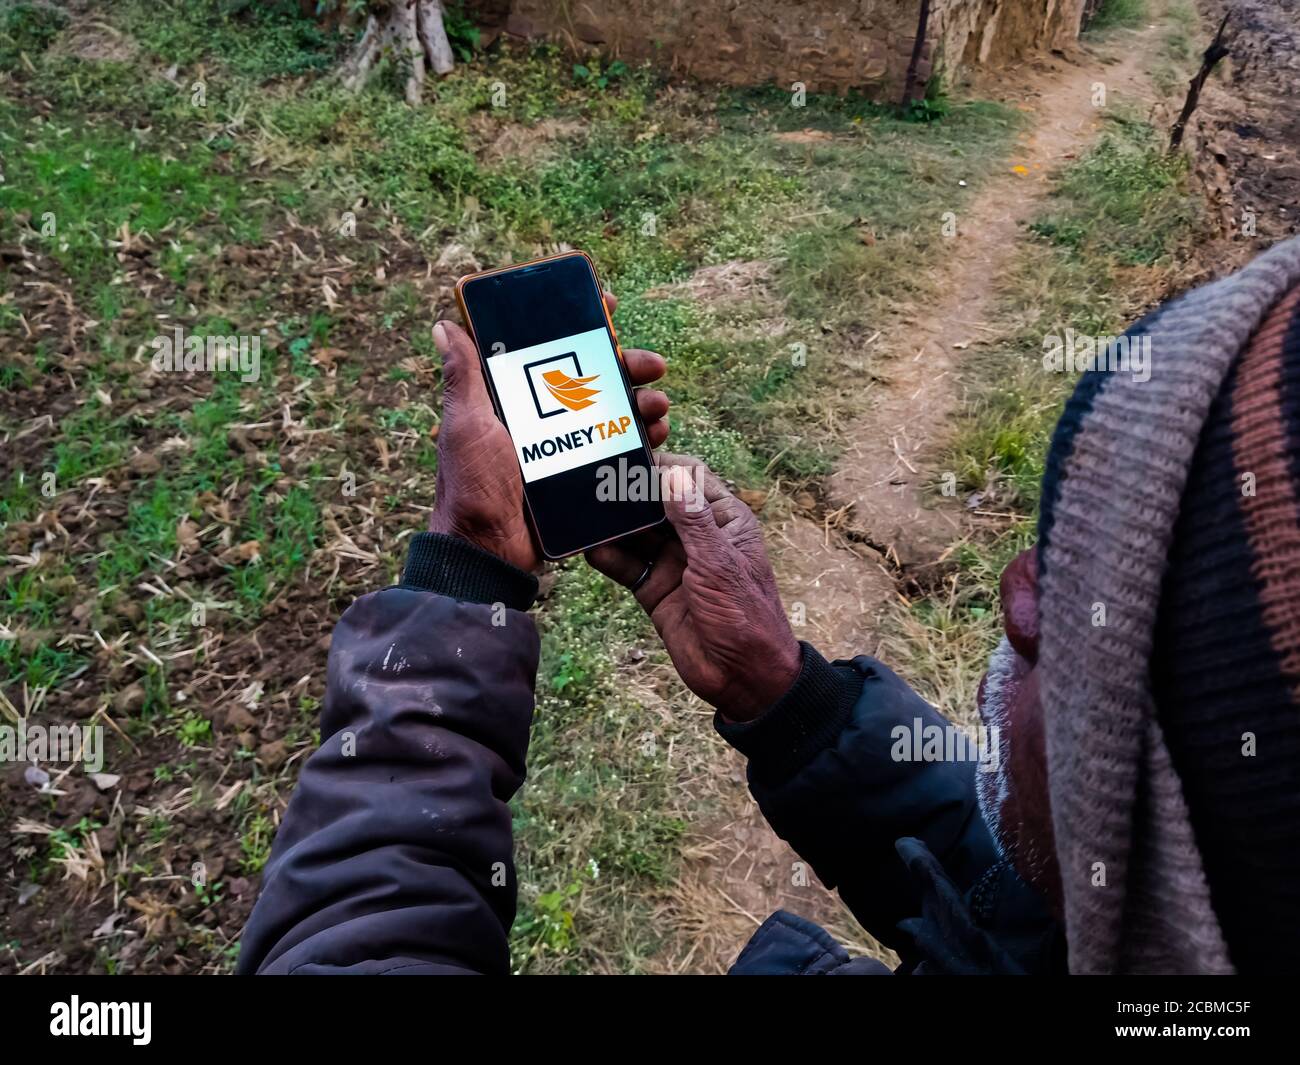 DISTRETTO KATNI, INDIA - 20 DICEMBRE 2019: Denaro Tap logo prestito istantaneo presentato su smart phone schermo digitale da parte della gente villaggio indiano mano che tiene m Foto Stock